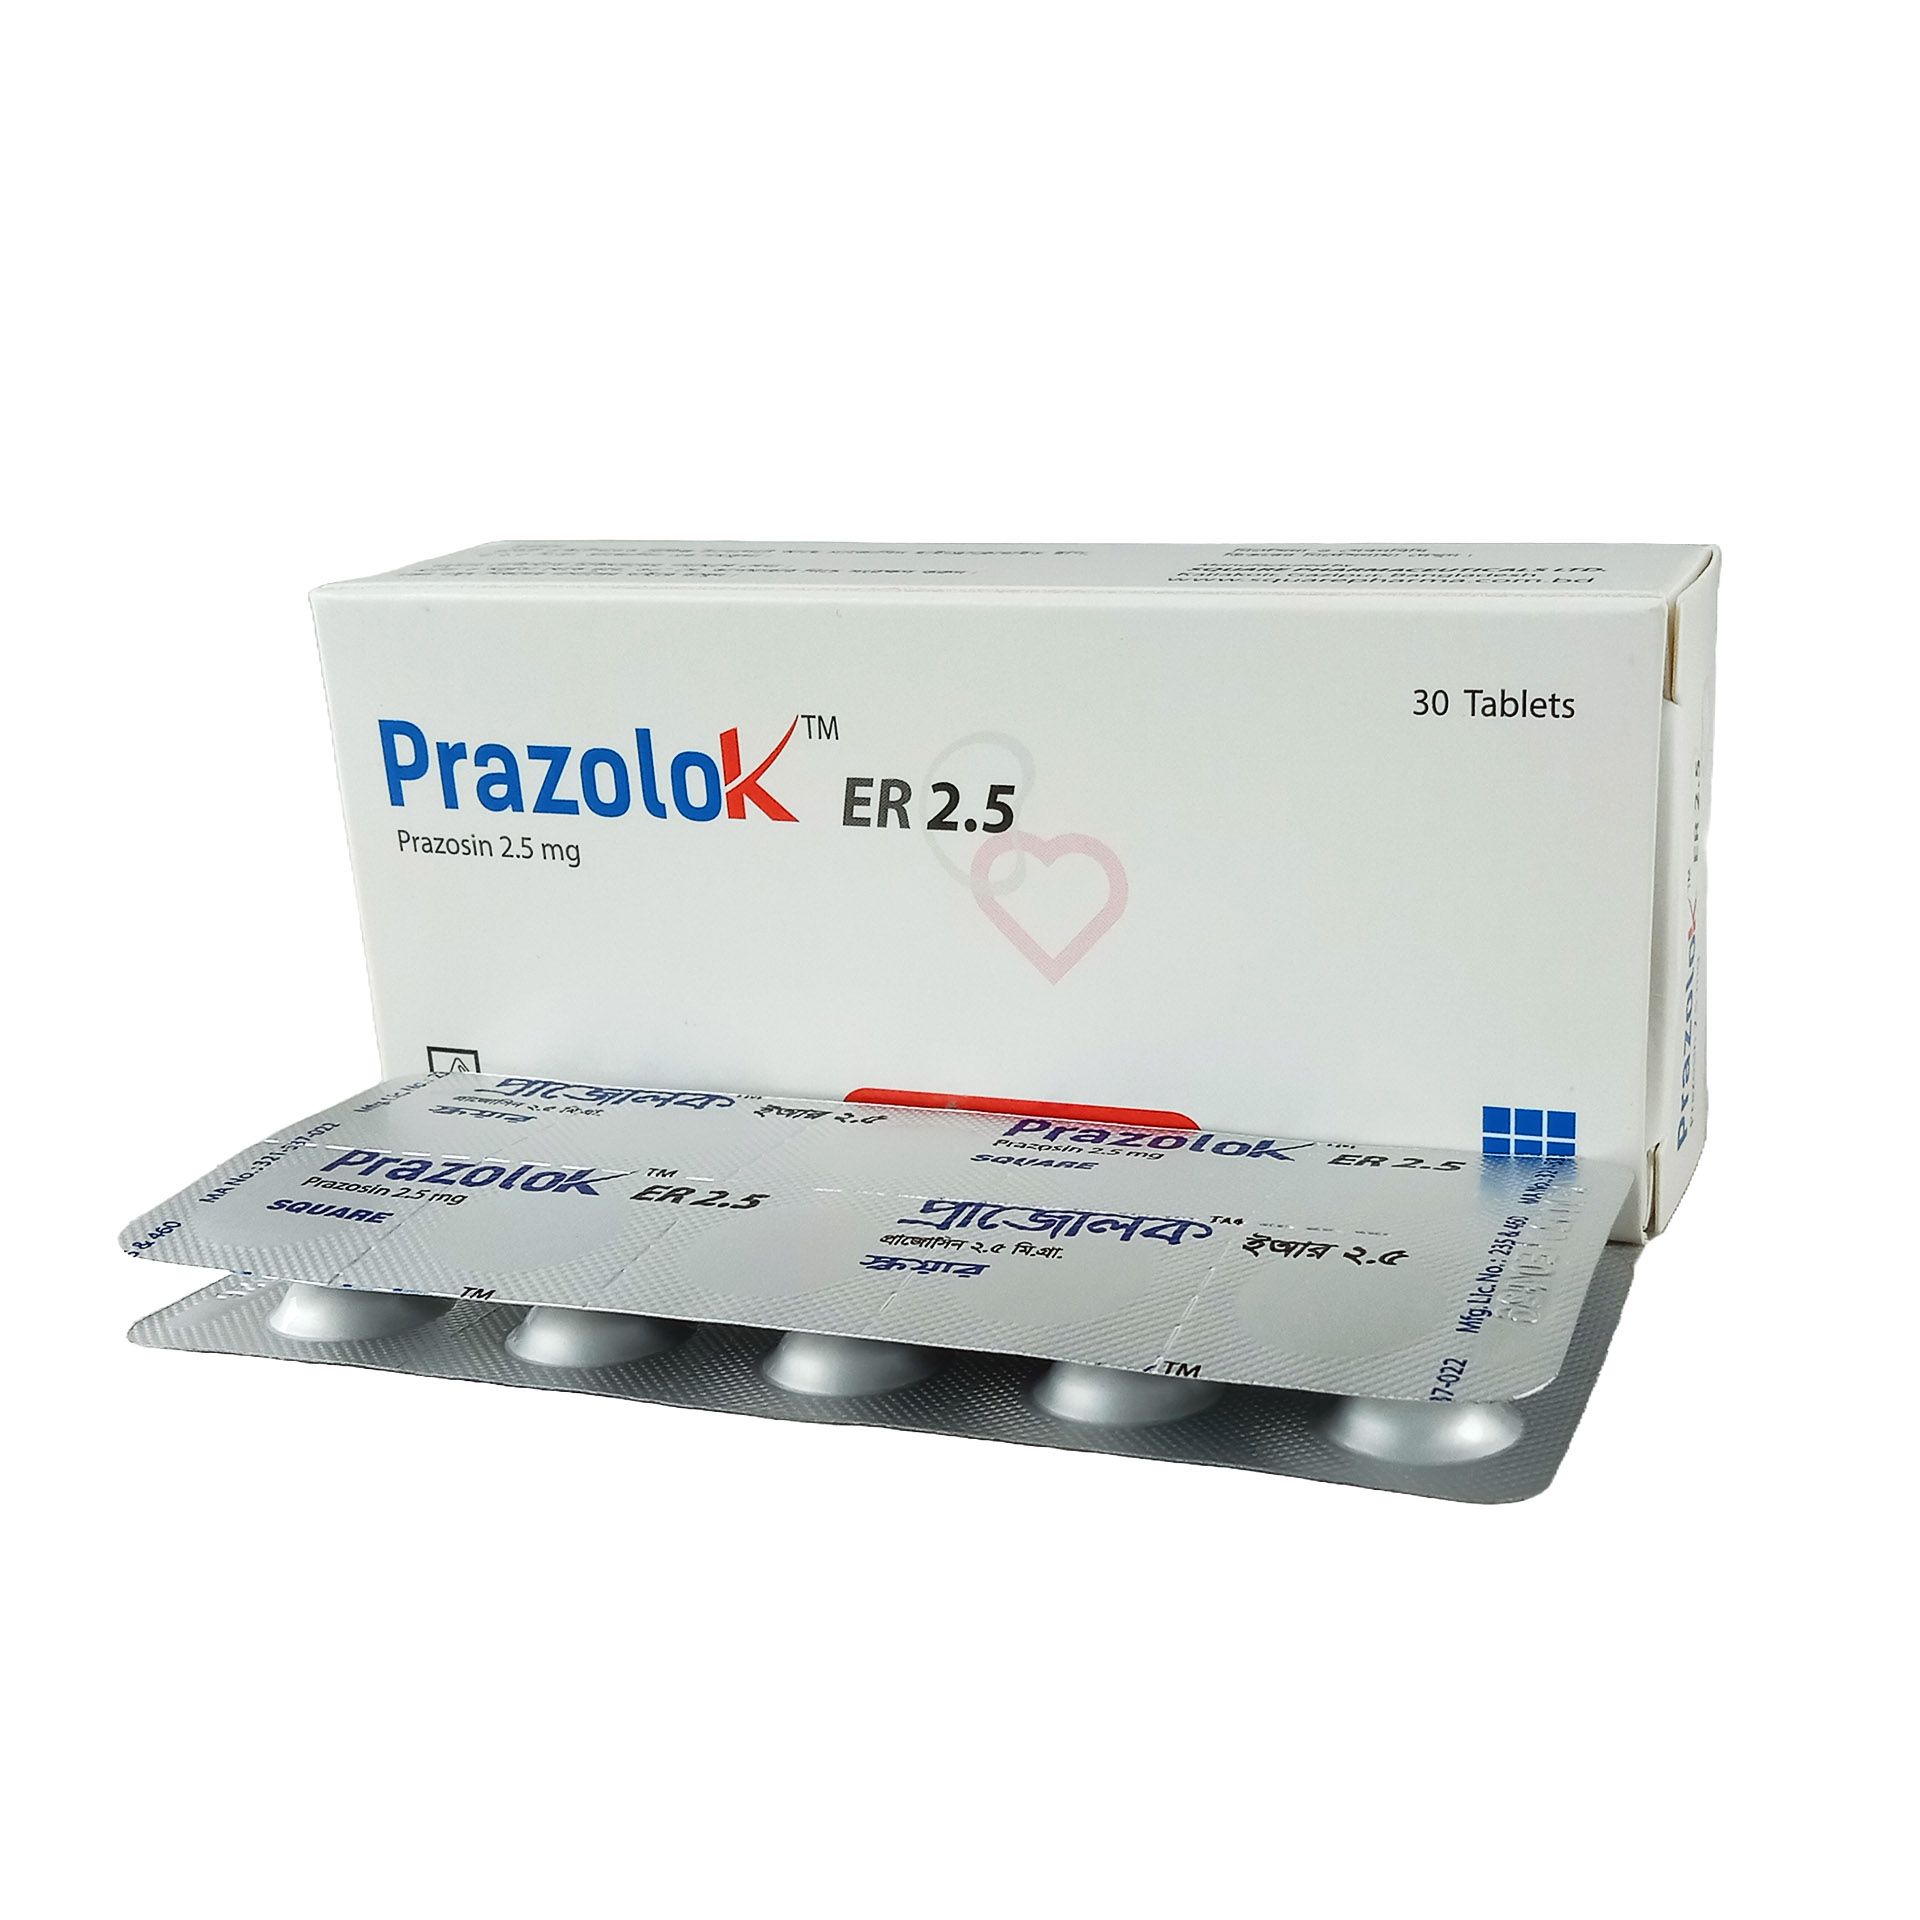 Prazolok ER 2.5 2.5mg Tablet